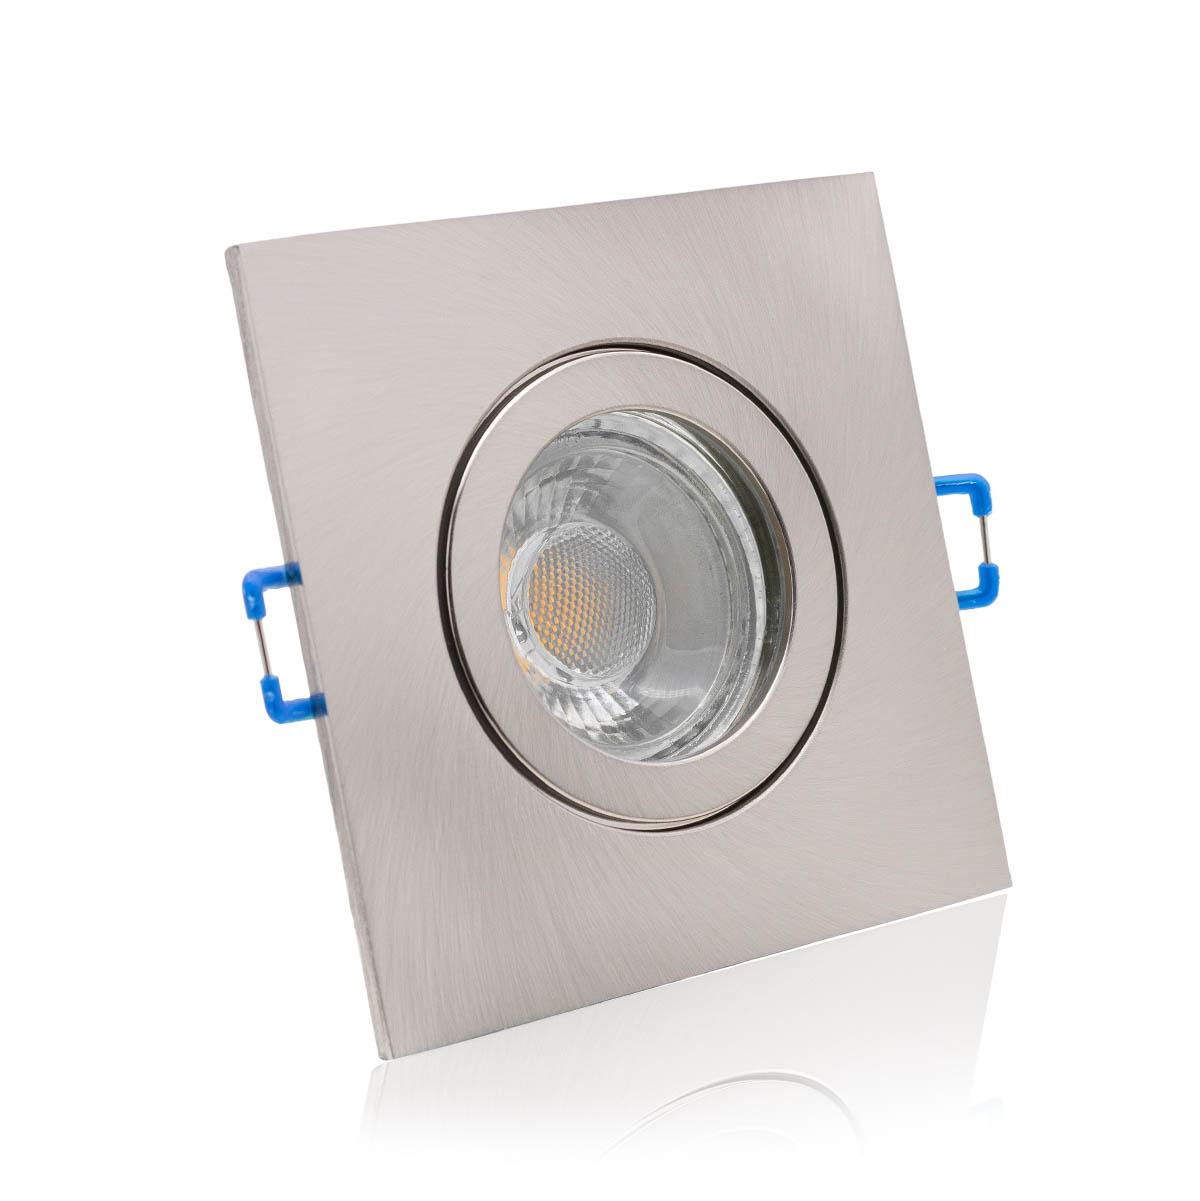 Einbauspot IP44 eckig - Abdeckring:  Edelstahl-gebürstet - LED Leuchtmittel:  GU10 5W neutralweiß